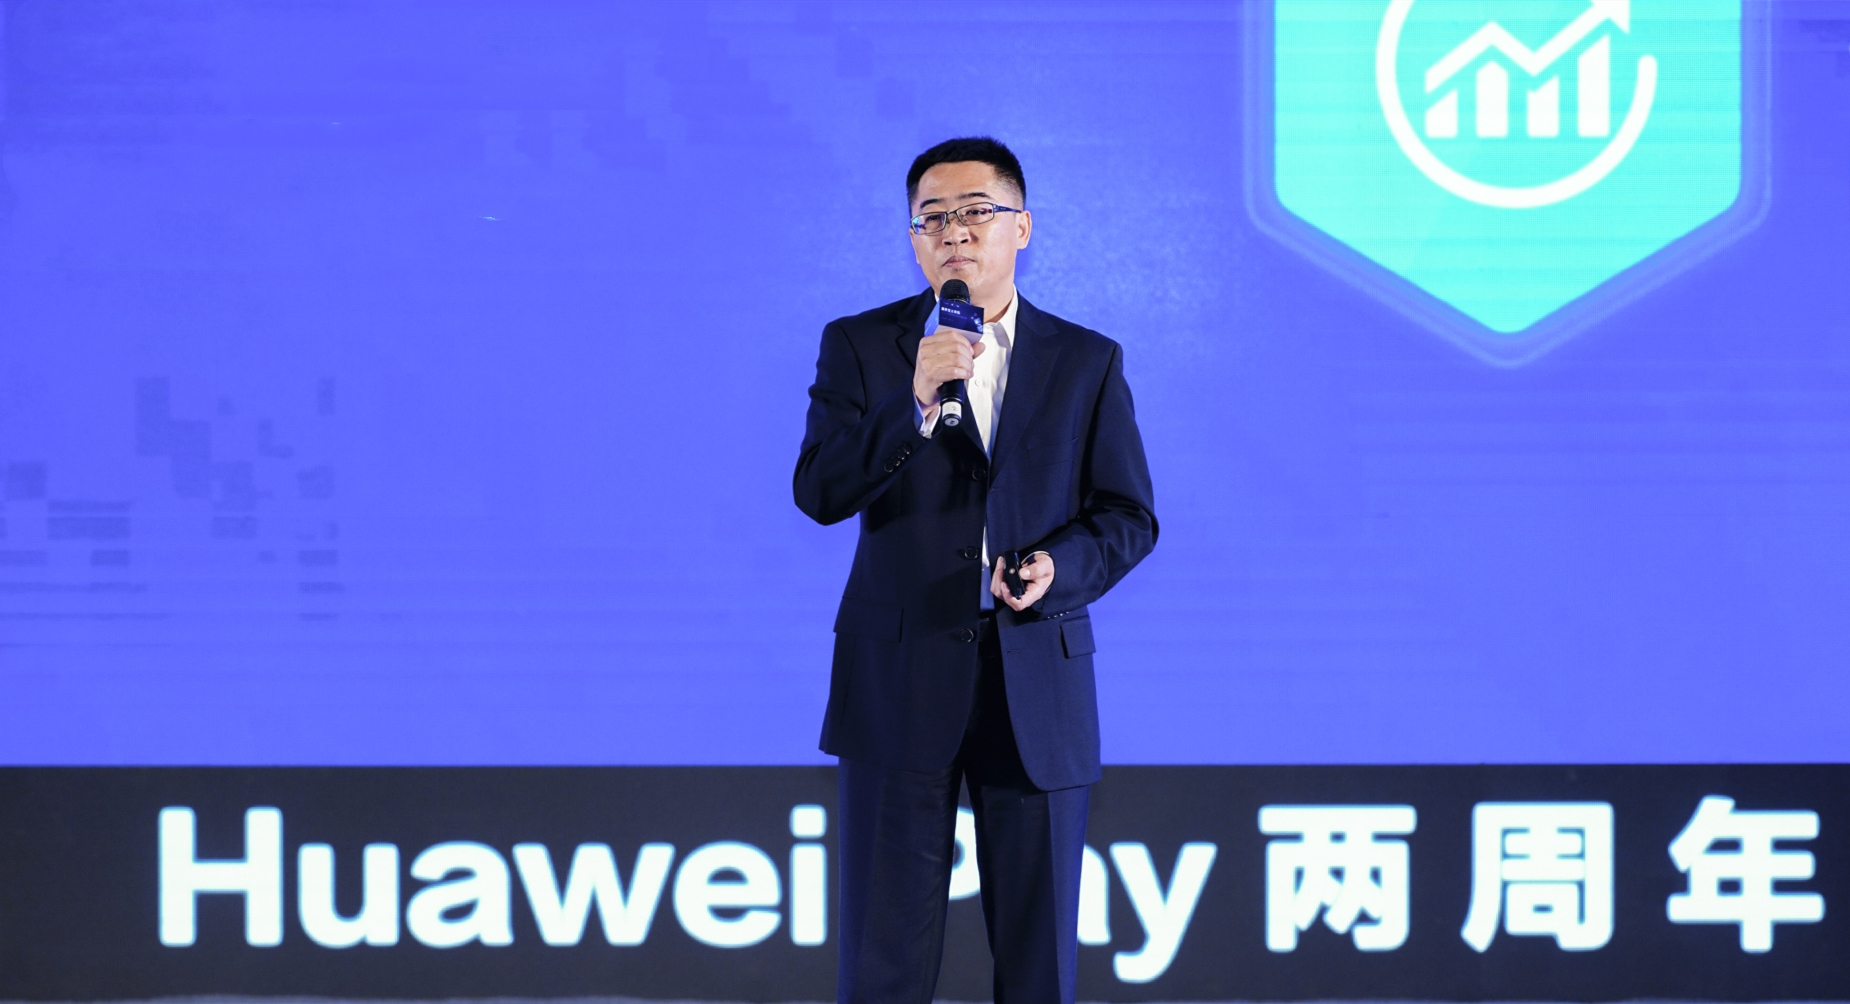 Huawei Pay开启新生态 重新定义钱包